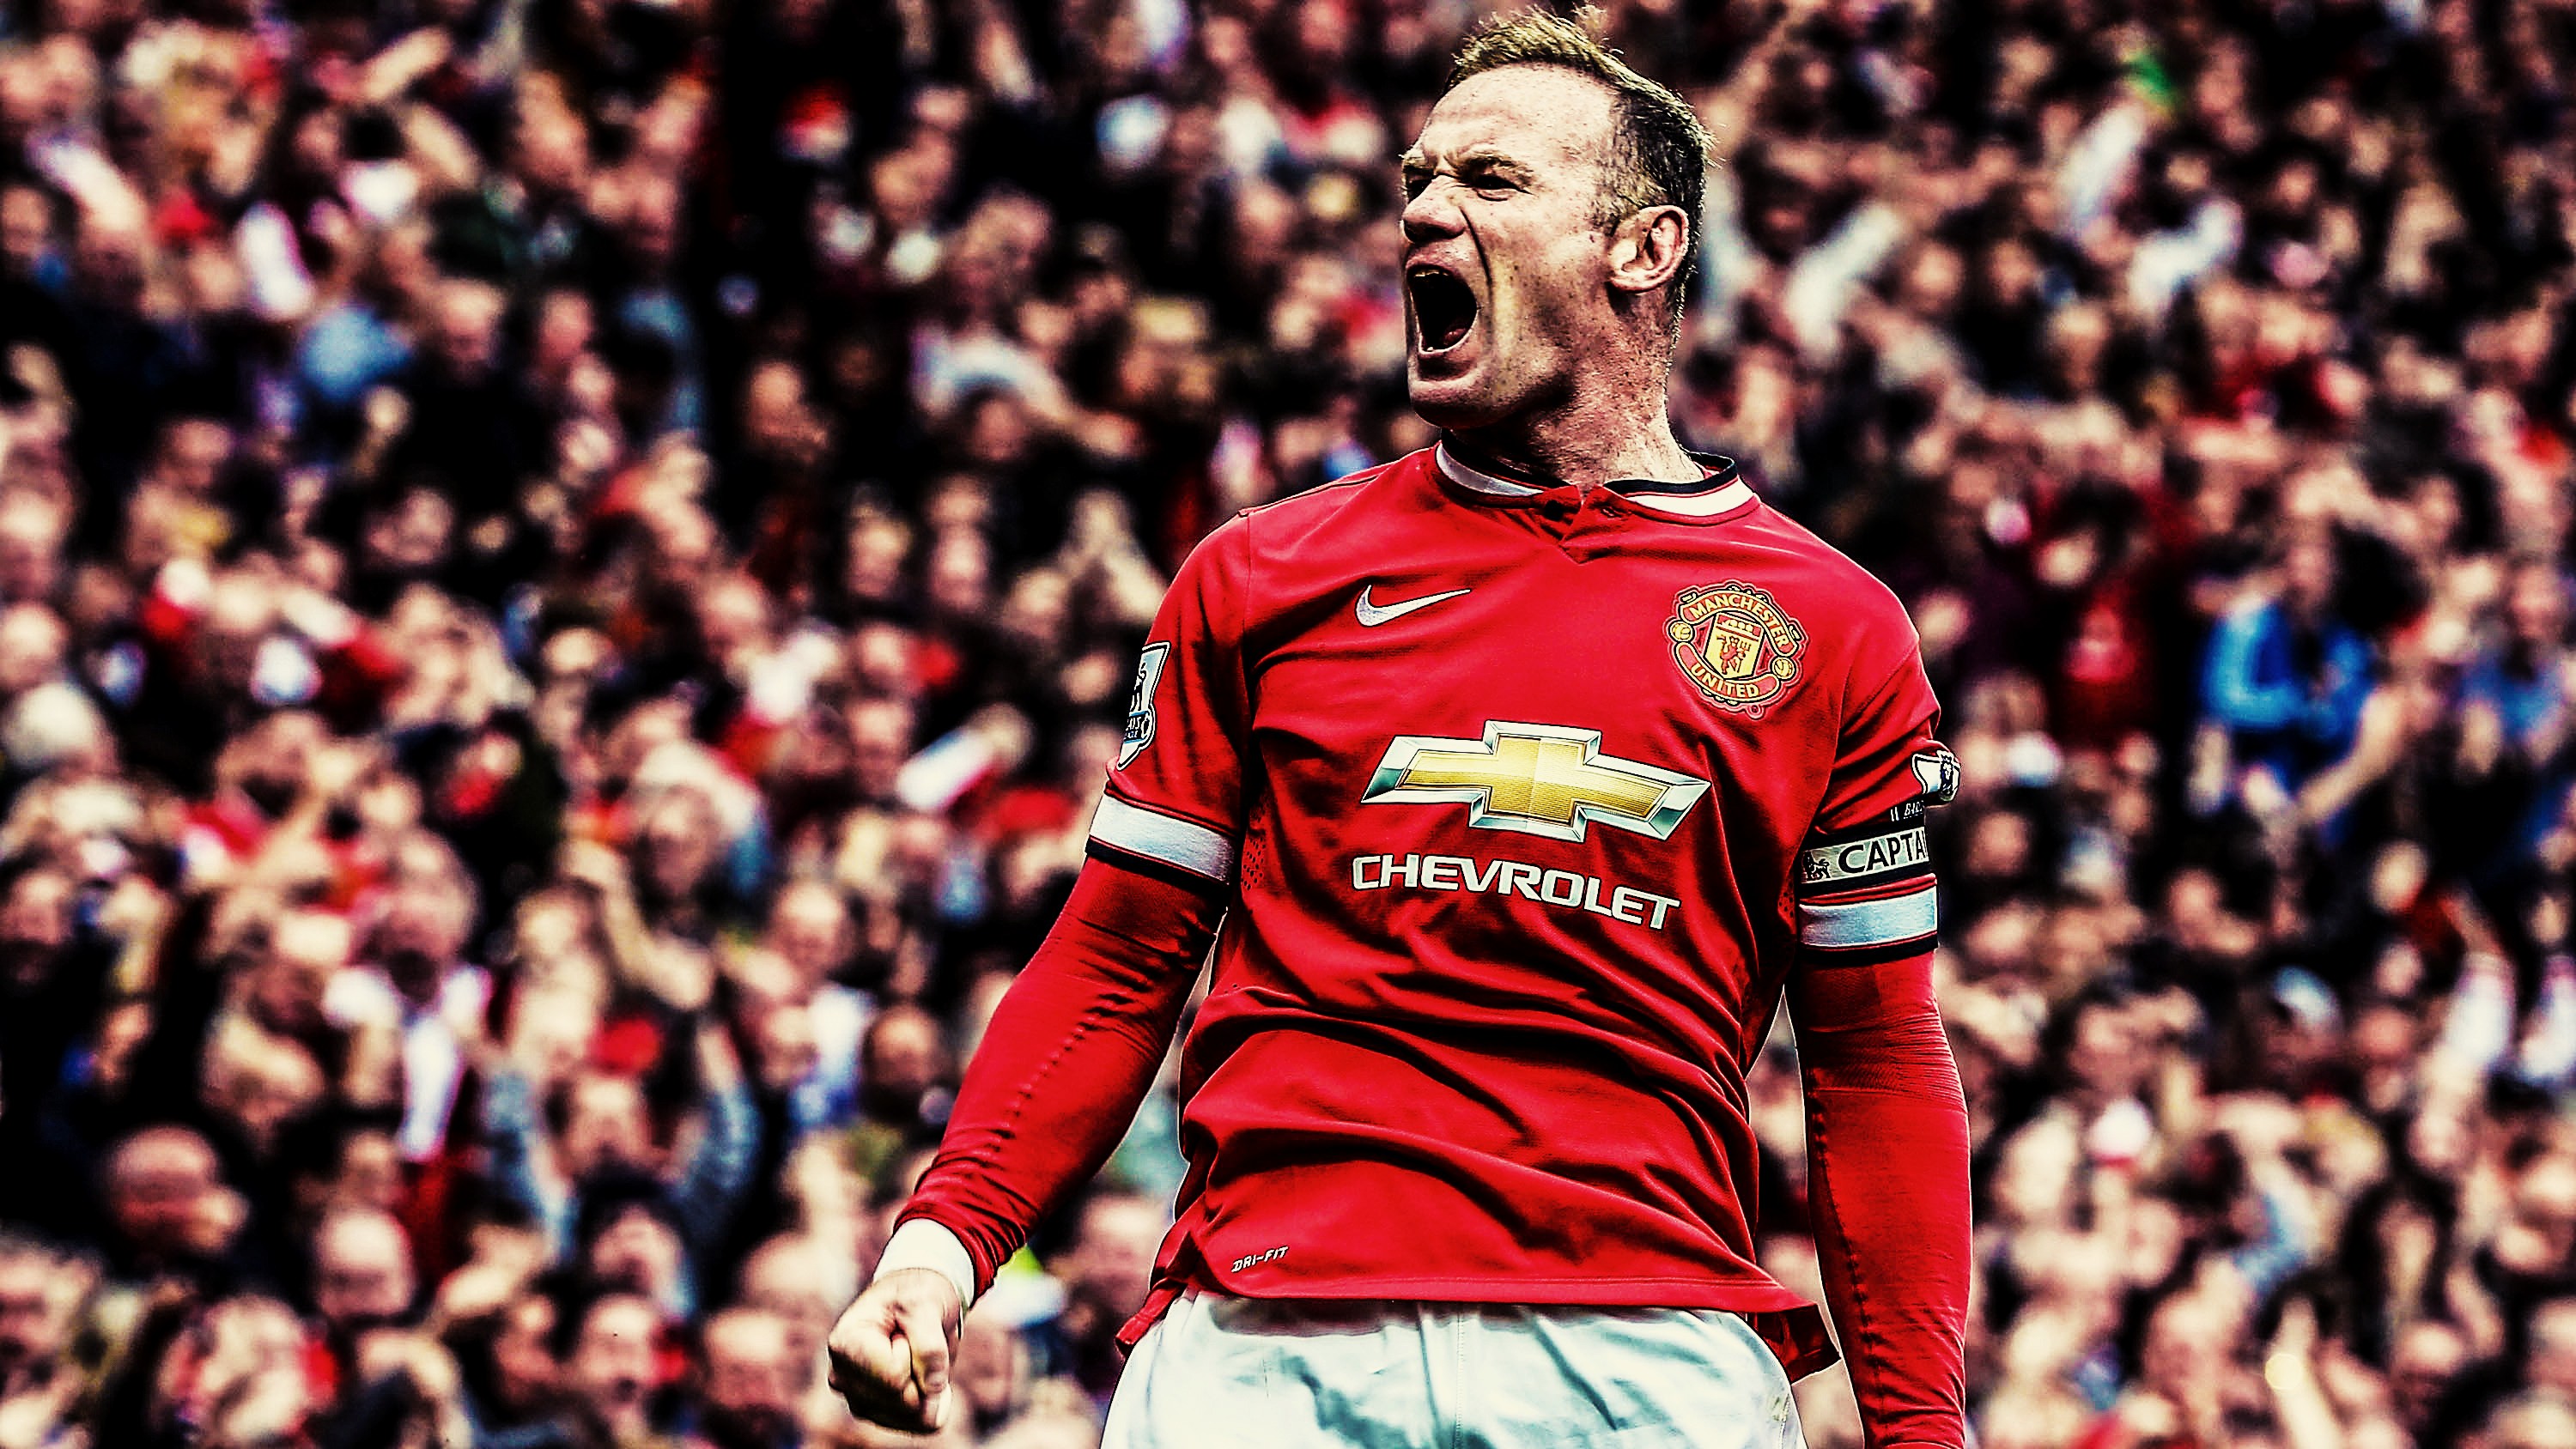 Wayne Rooney muốn tiếp tục chơi bóng tại Premier League | Bóng Đá